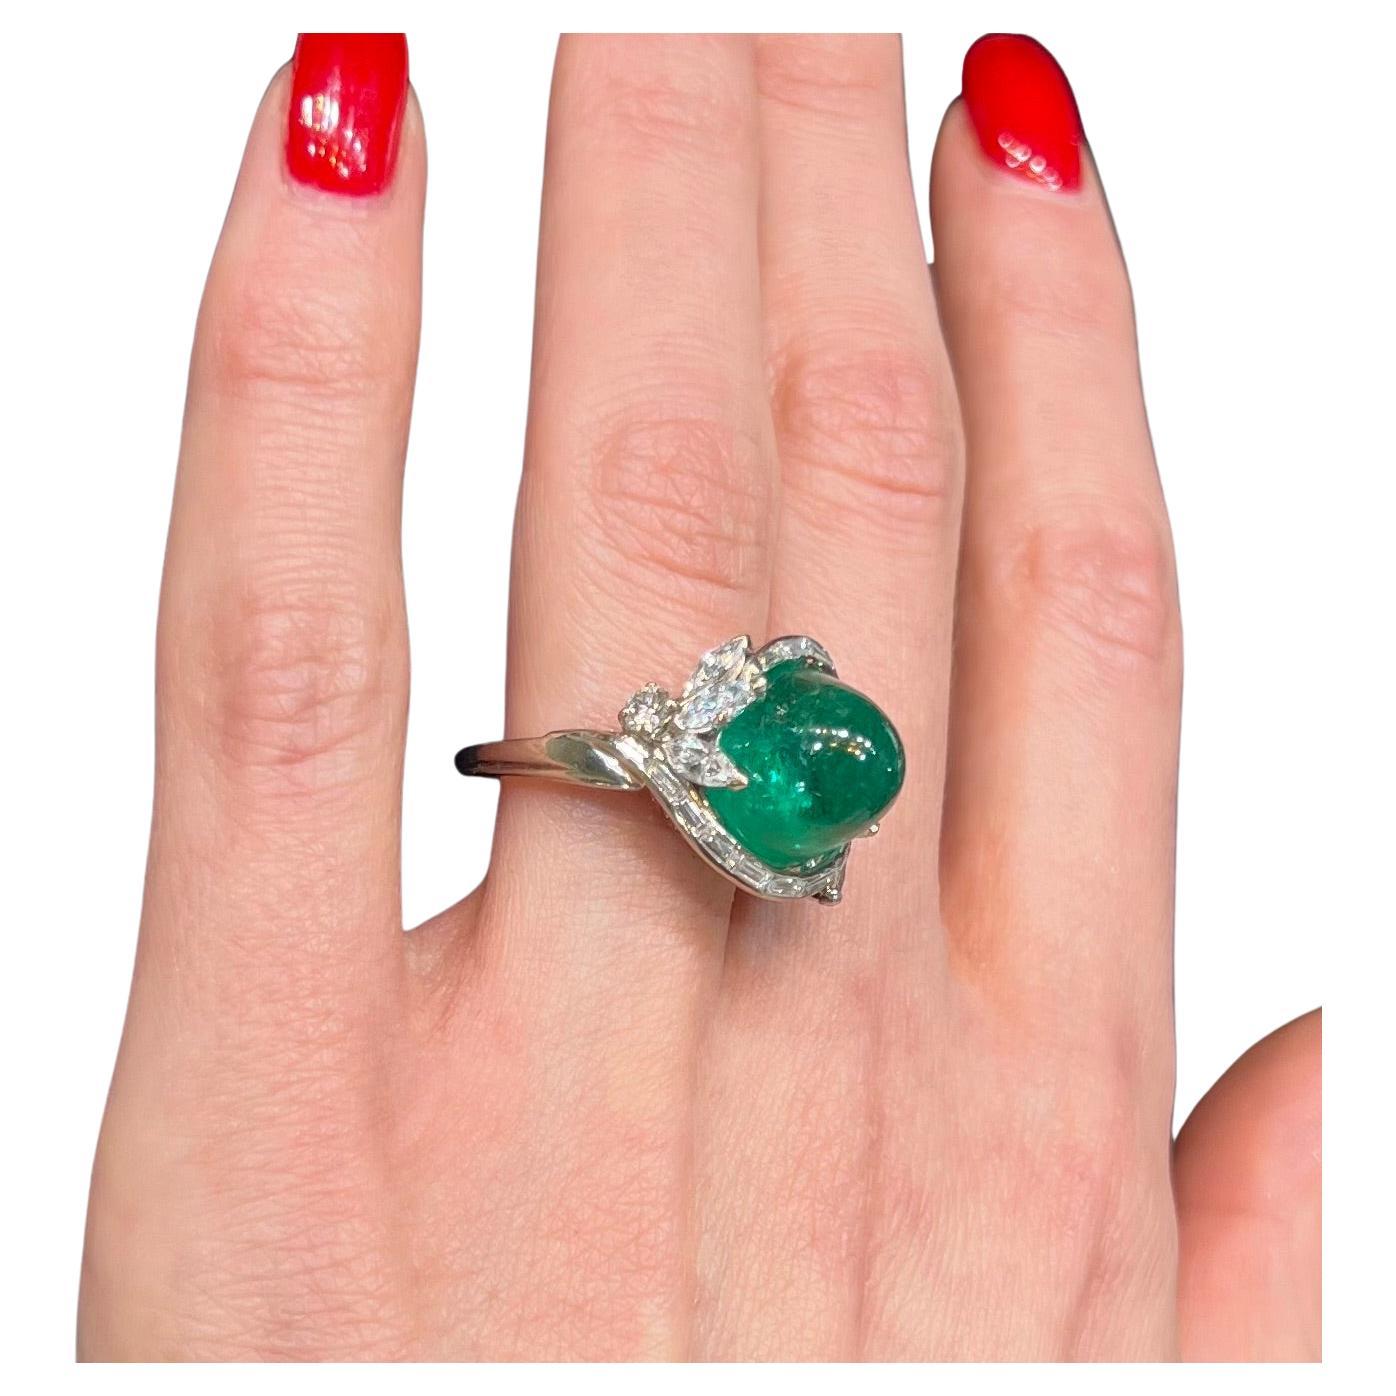 Voici l'incarnation du luxe et de l'élégance - la bague Sterle Paris Natural Columbian Emerald and Diamond. Cette pièce exquise est ornée d'une émeraude naturelle d'une valeur de 7 ct, qui met en valeur sa riche teinte verte vibrante, qui captivera